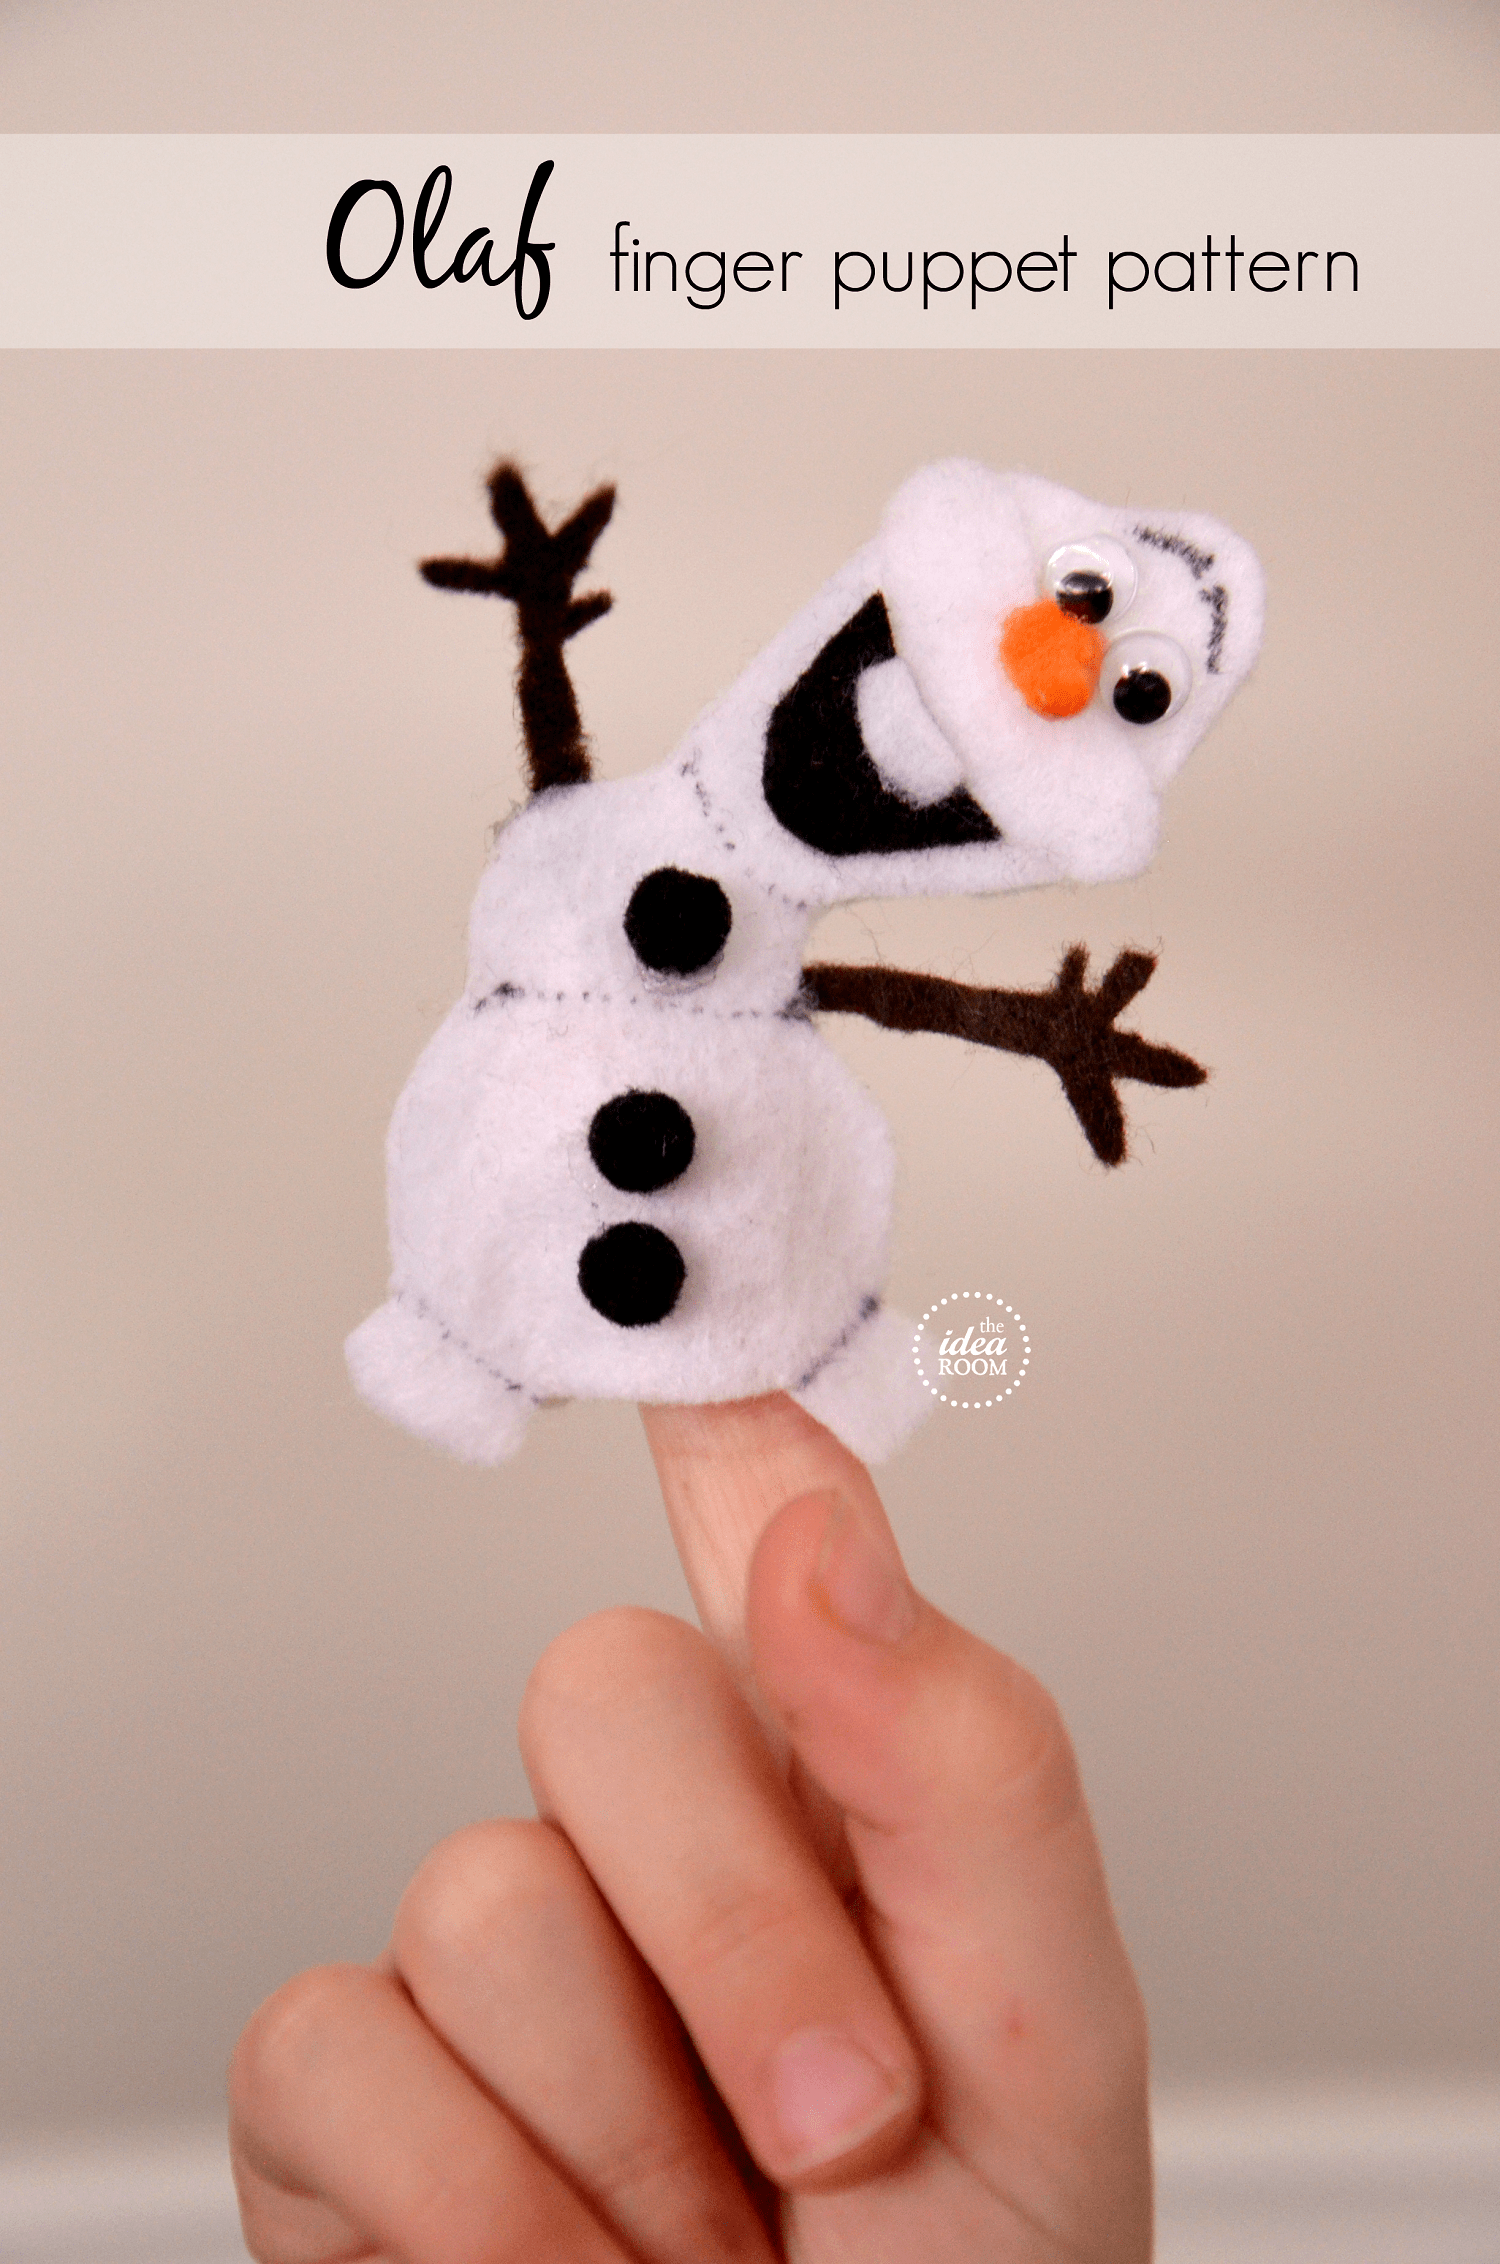 Felt Olaf finger puppet